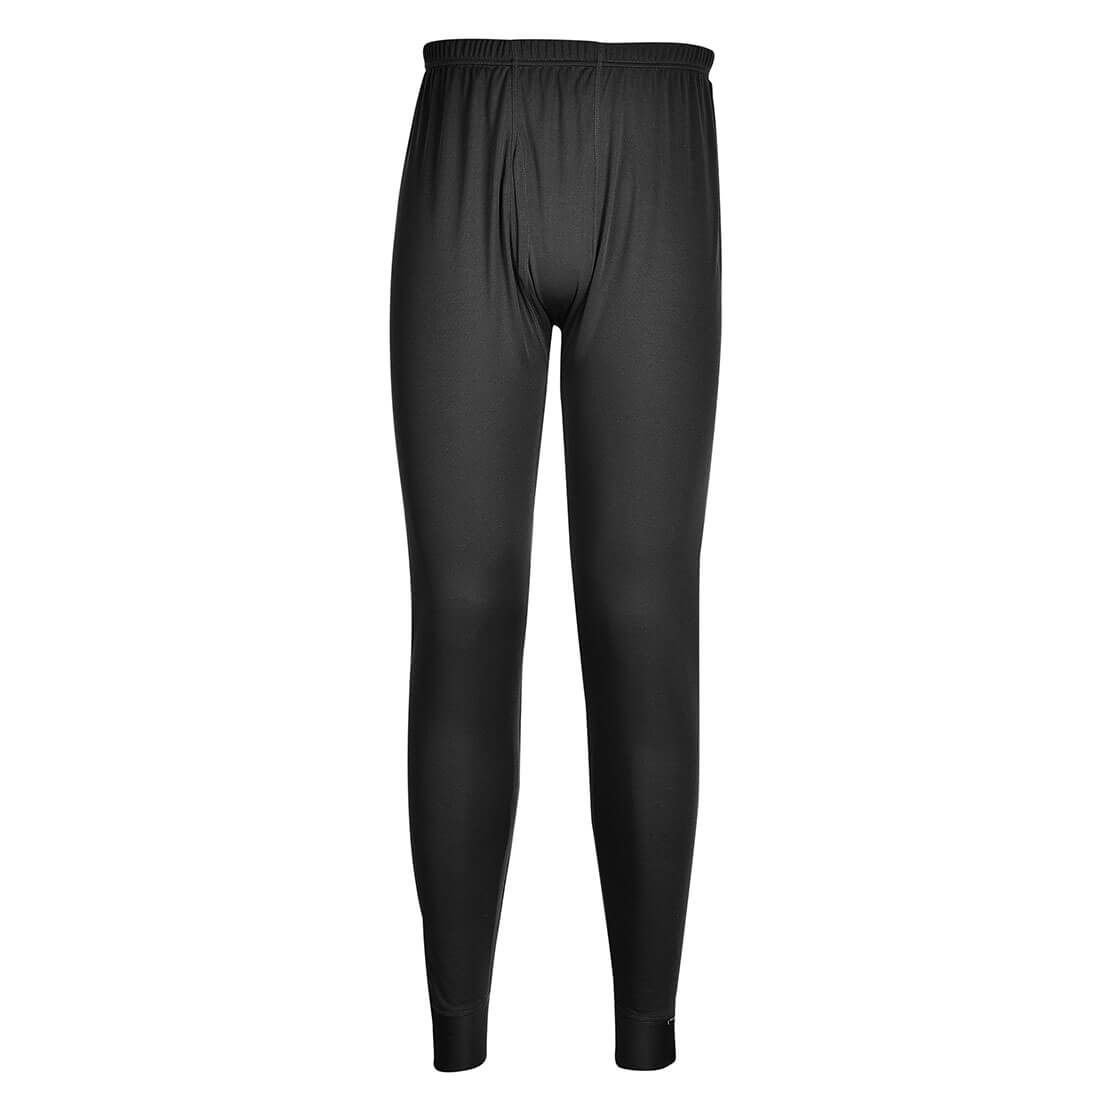 Pantalon Thermique Base - Les vêtements de protection